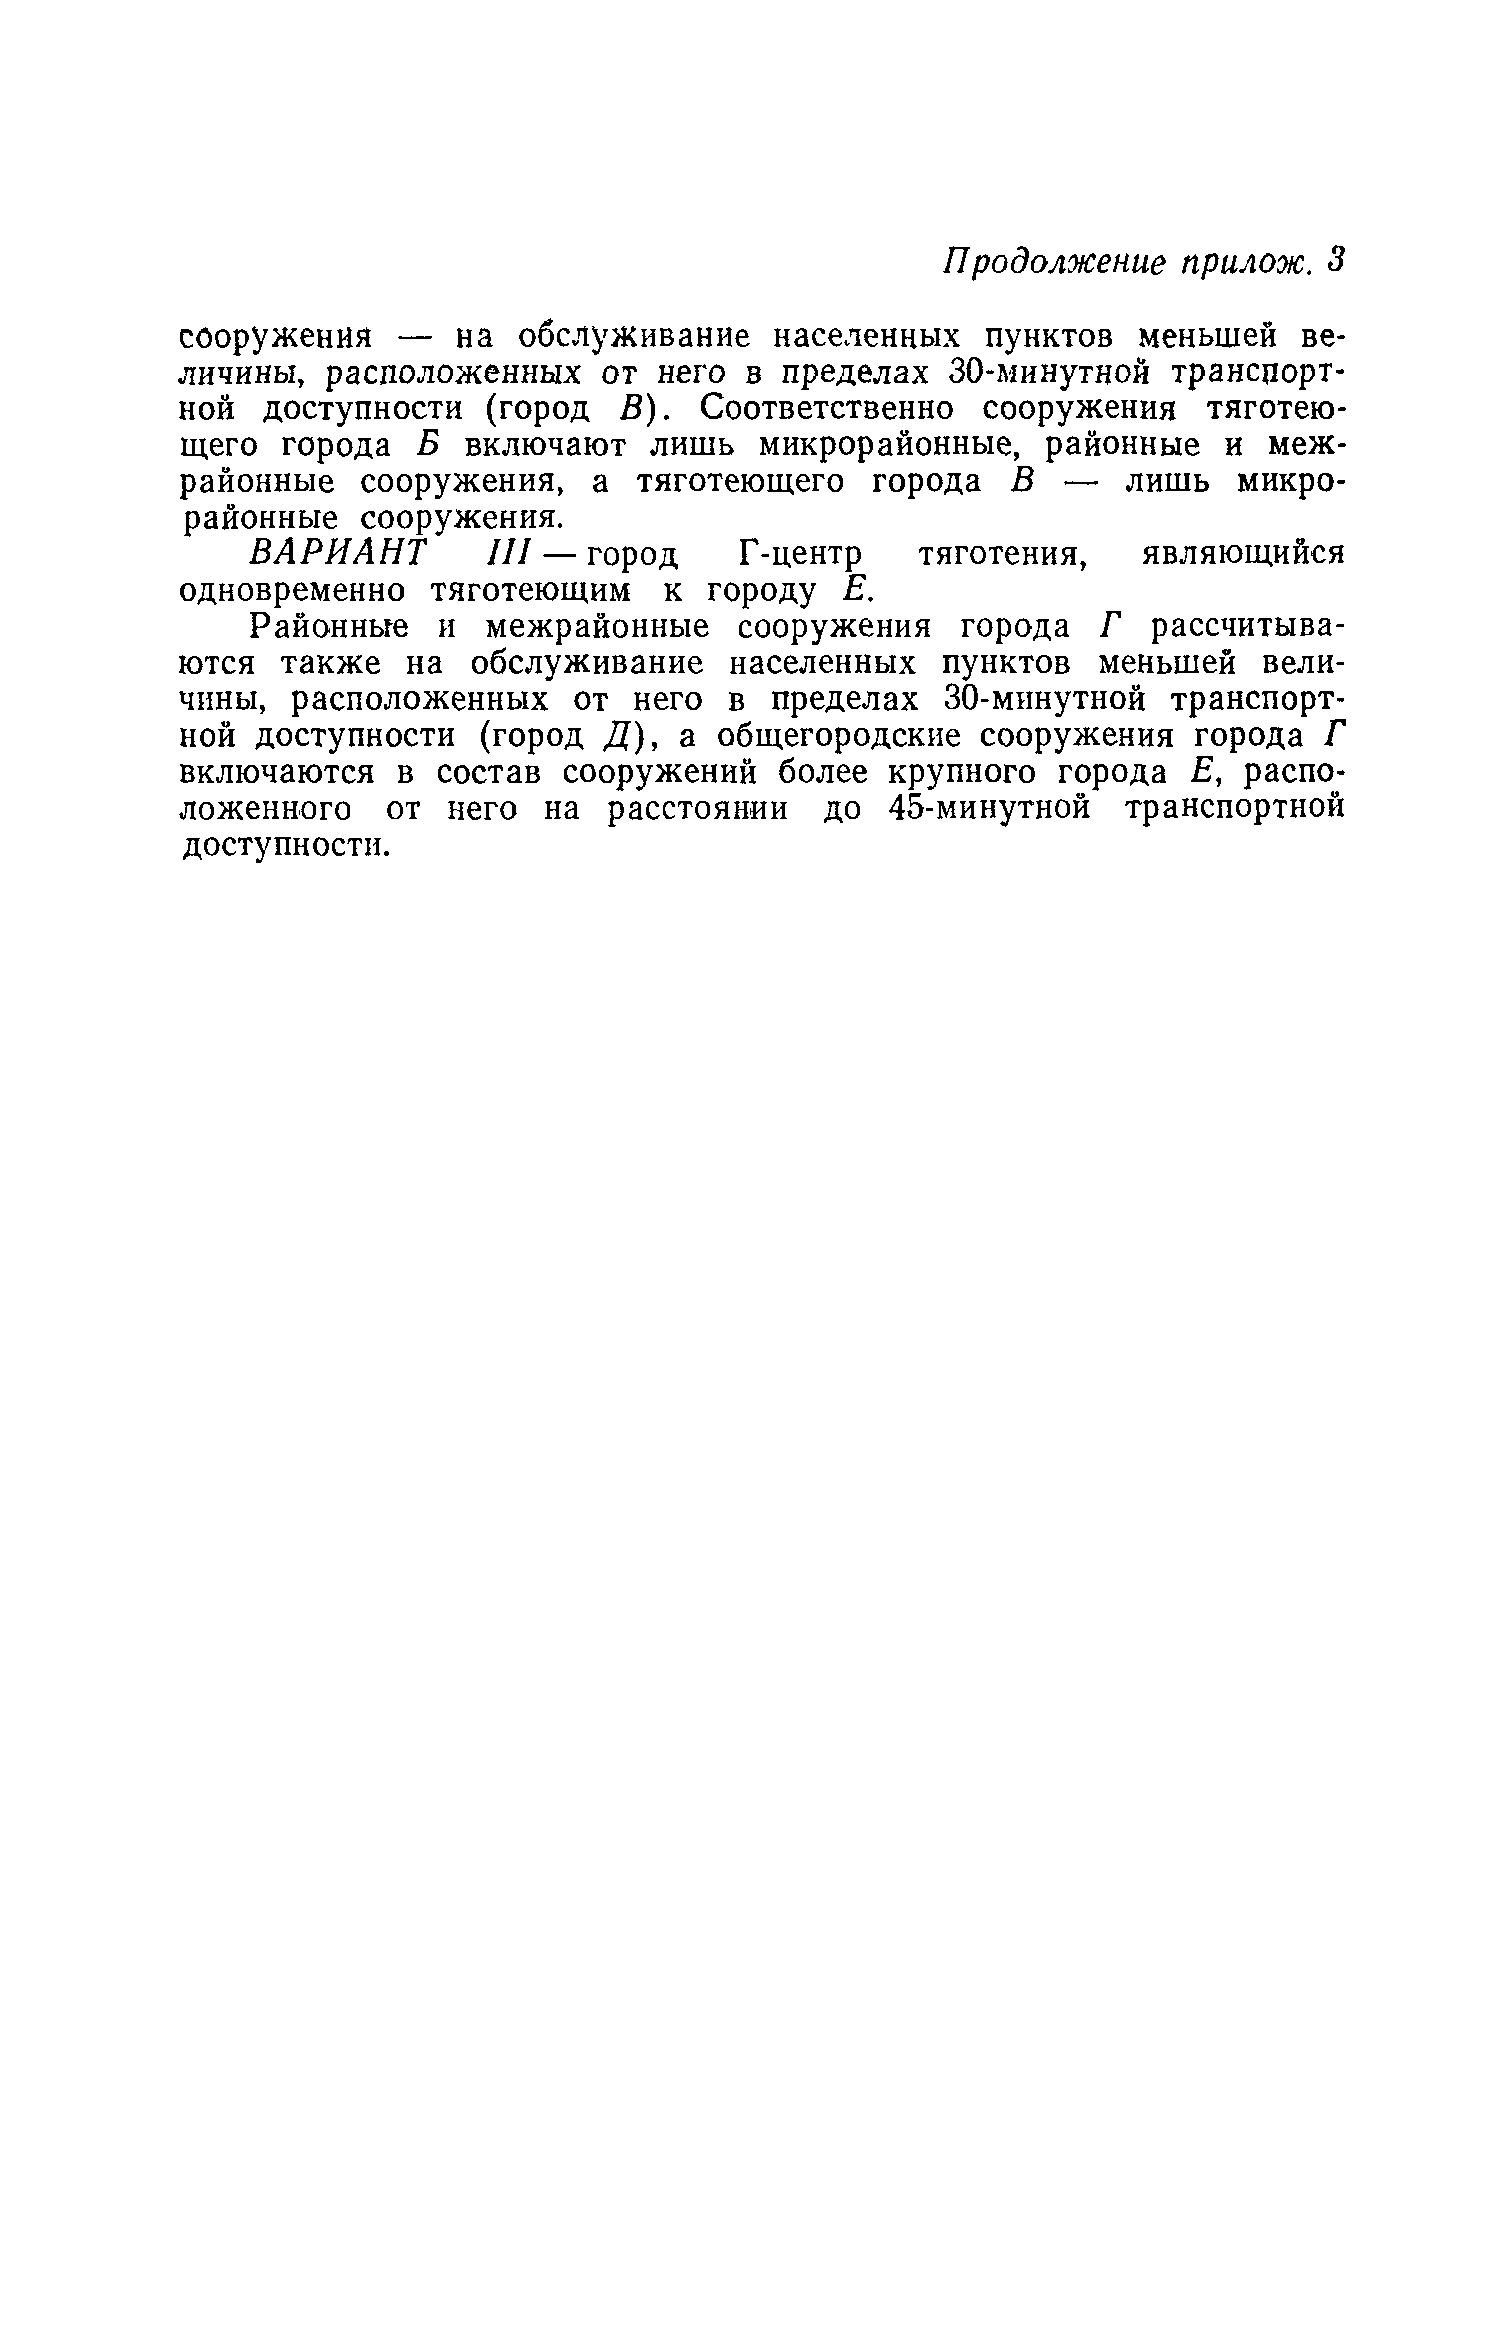 ВСН 2-71/Госгражданстрой